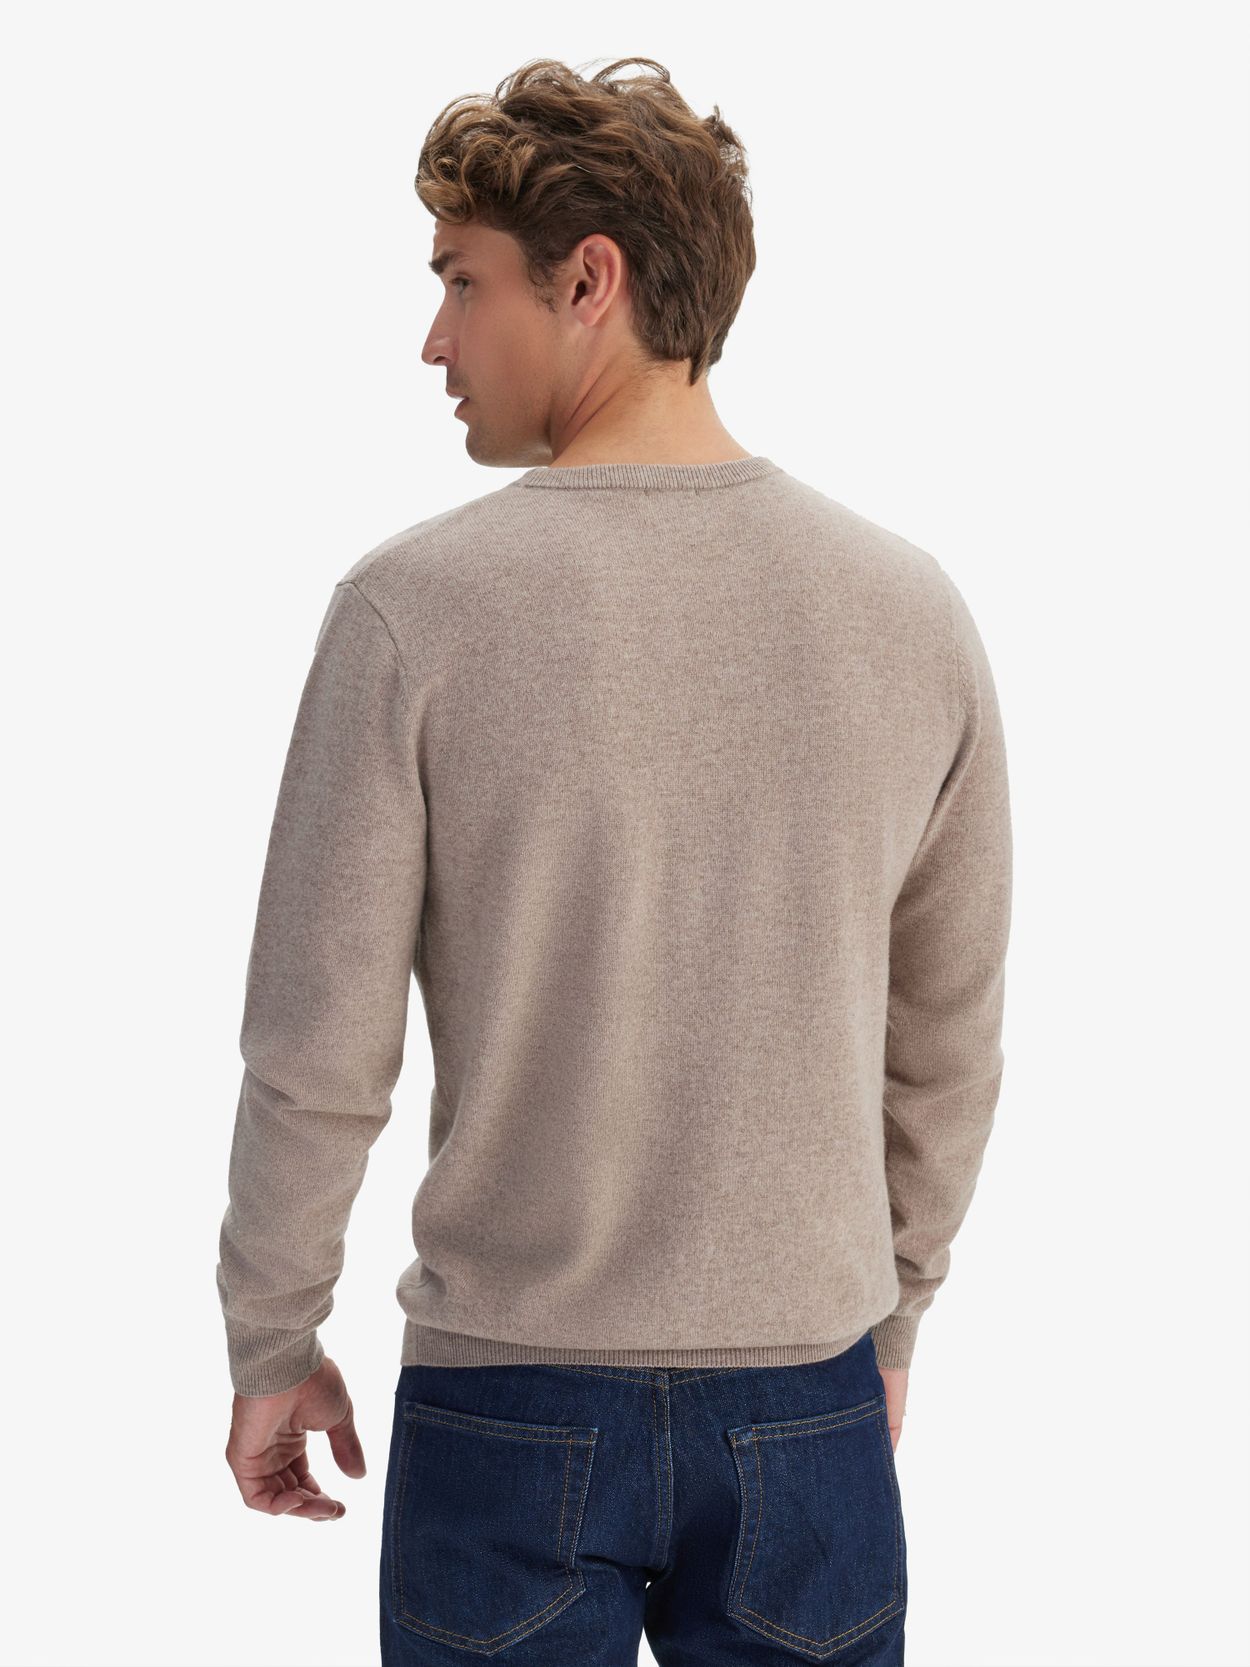 Beige Cashmere Sweater